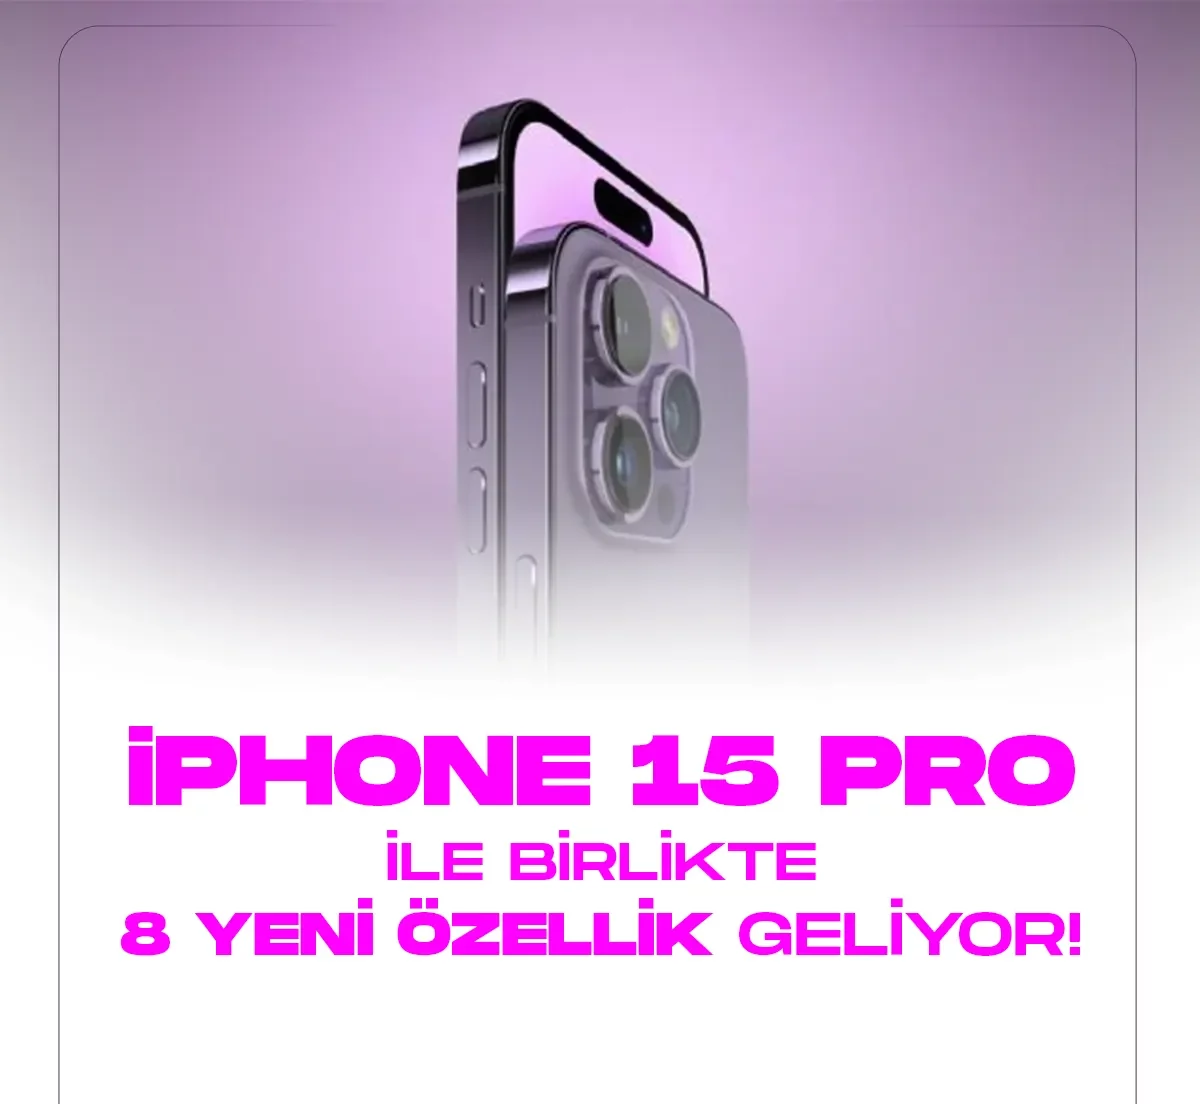 iPhone 15 Pro modellerle birlikte 8 özellik geliyor!